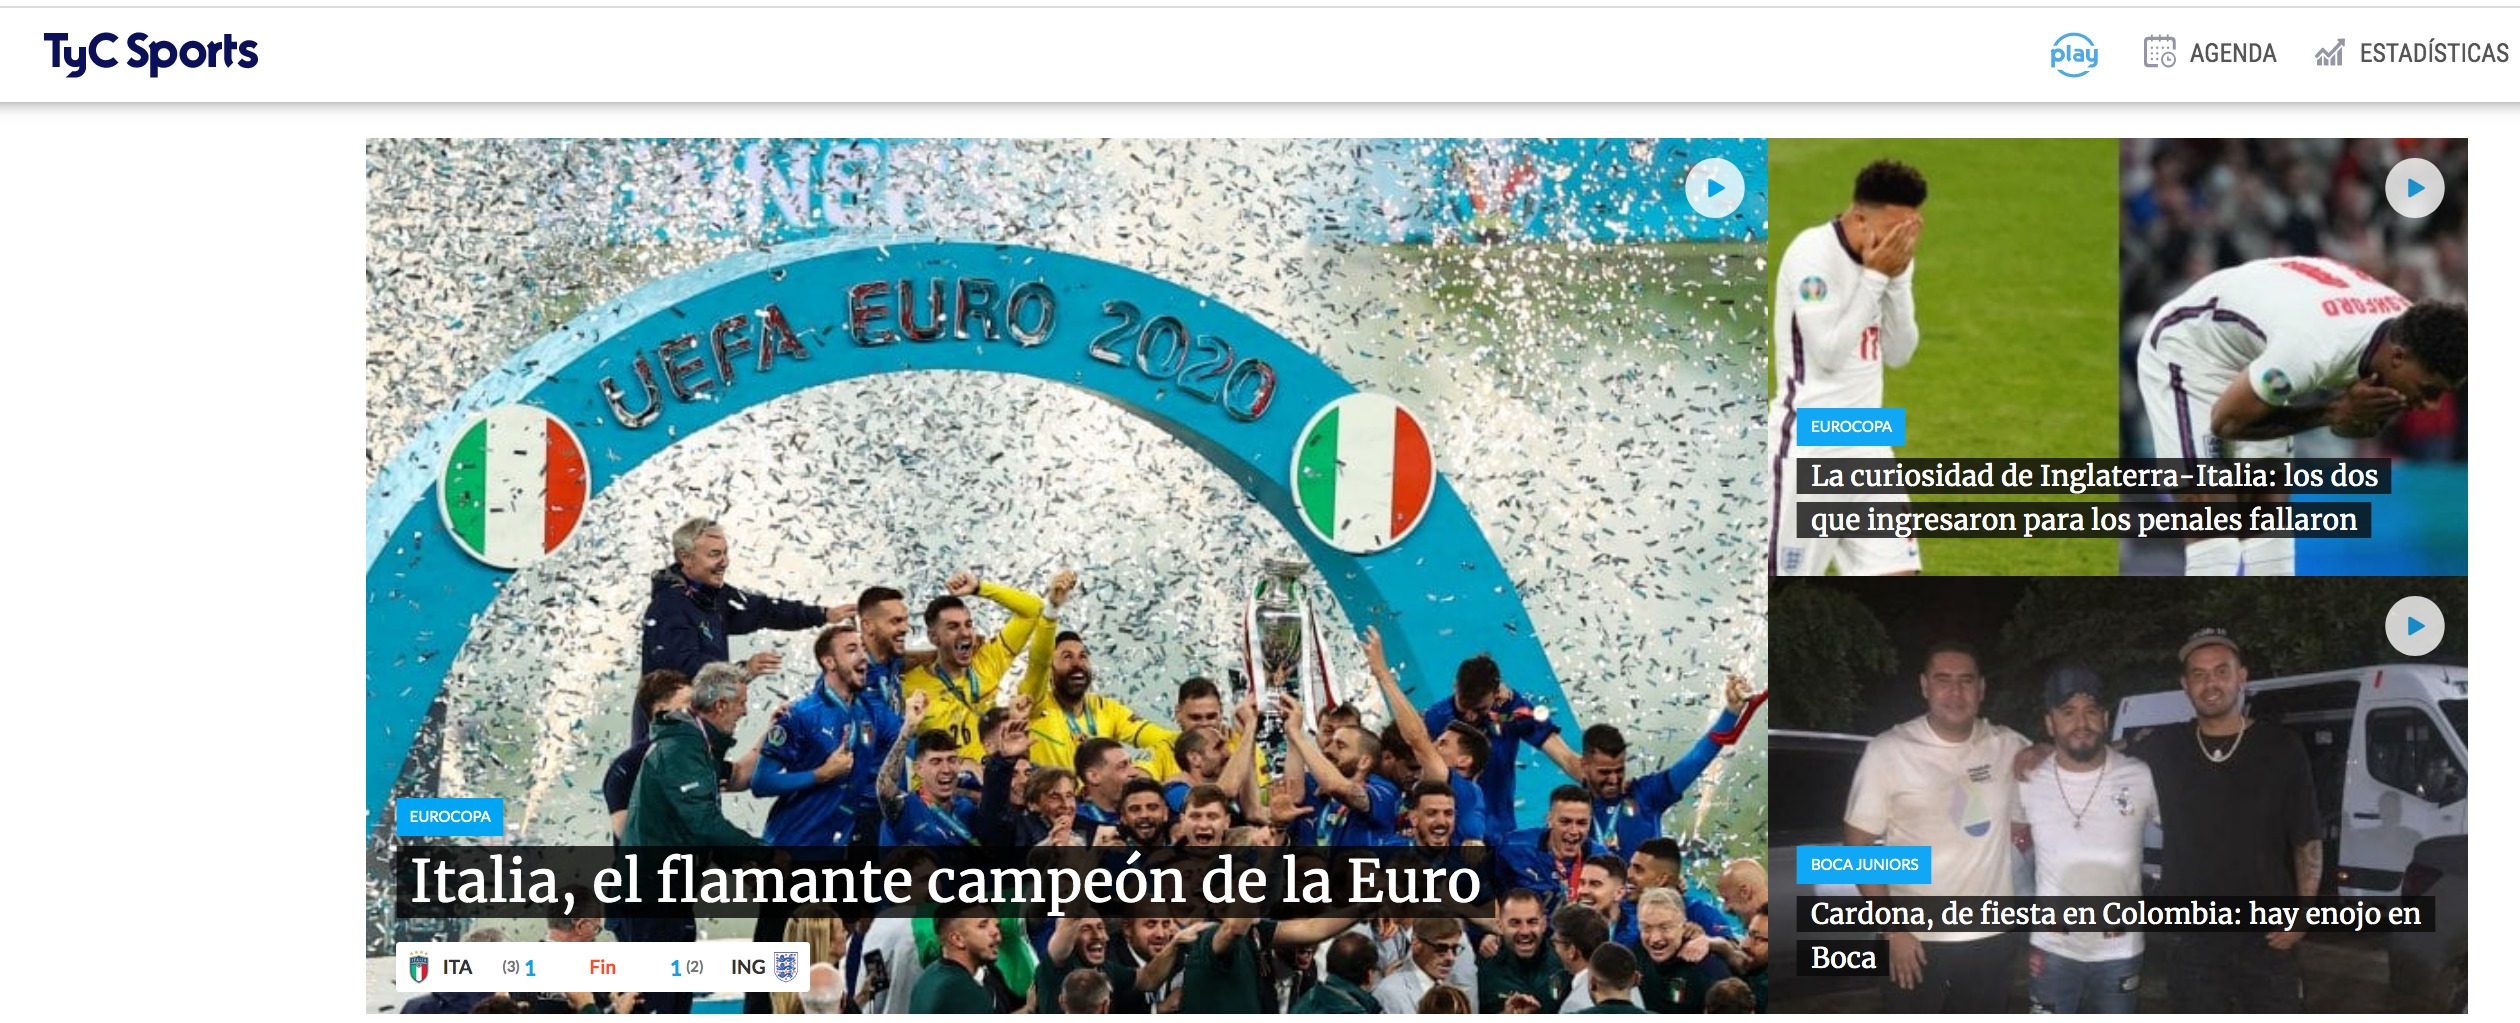 Italia ganó la Eurocopa 2020 tras vencer en los penales a Inglaterra.